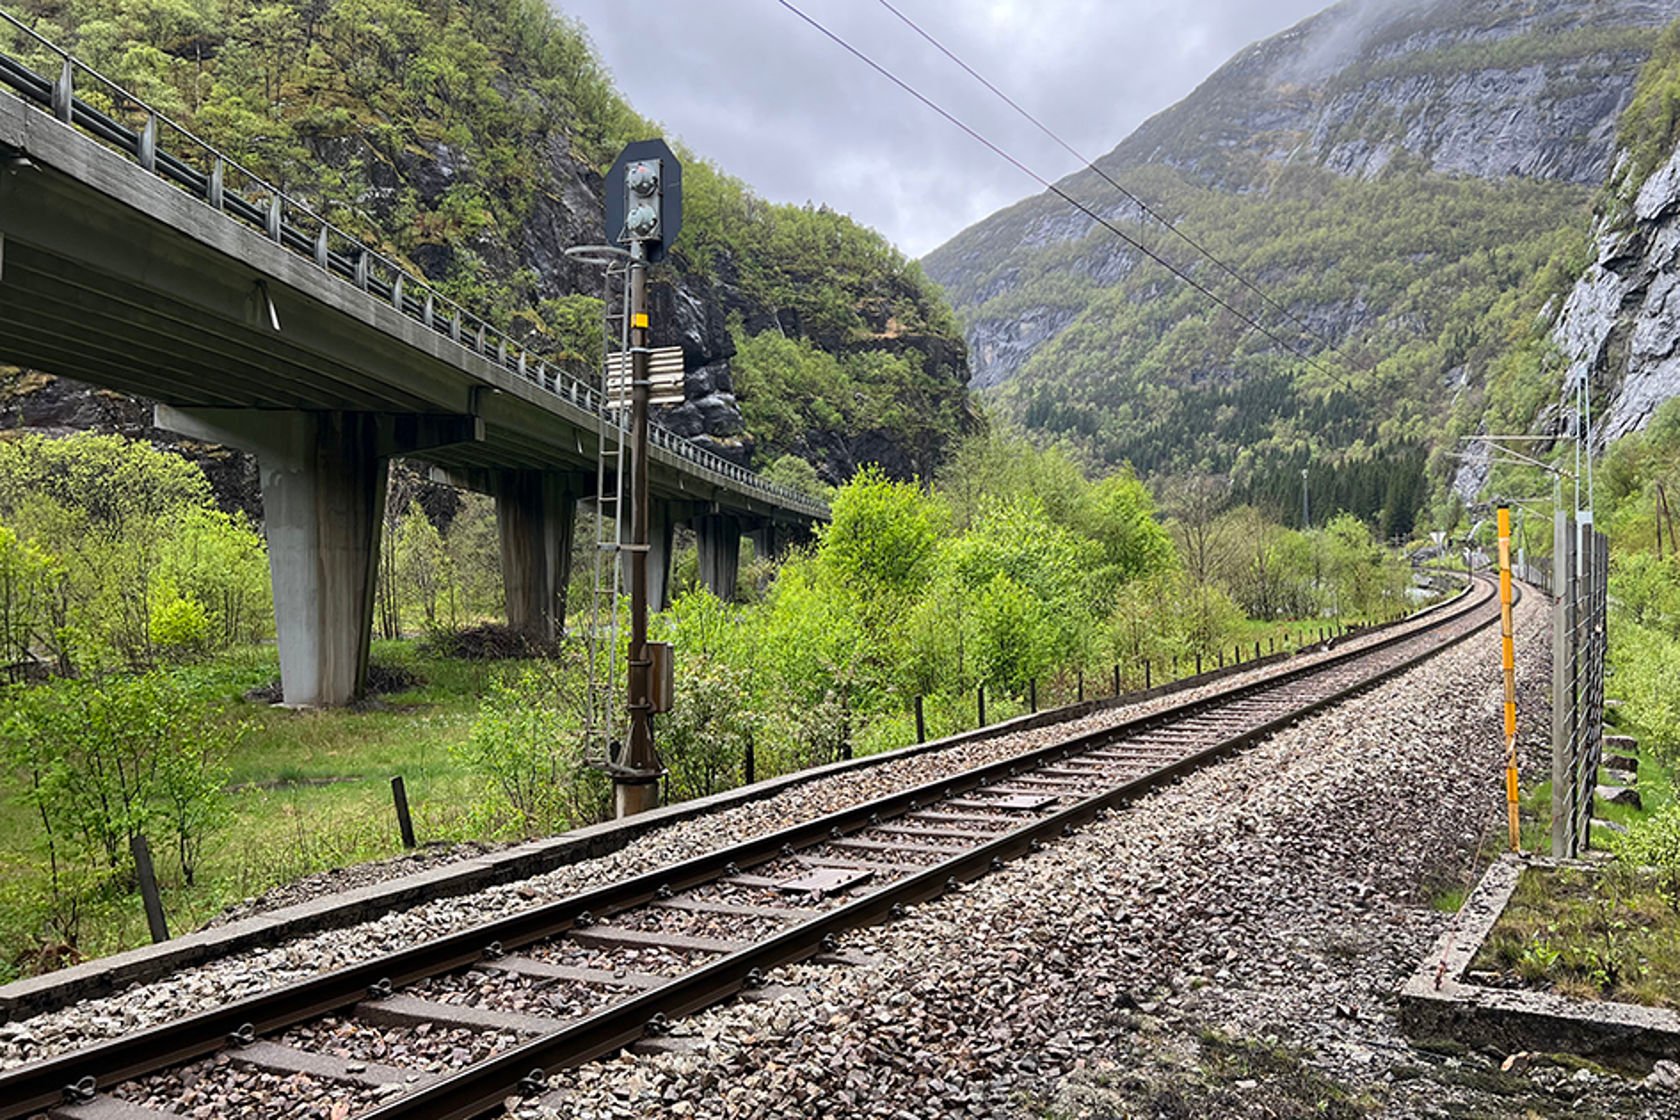 Bilde som viser jernbanespor og veibru i vakkert landskap